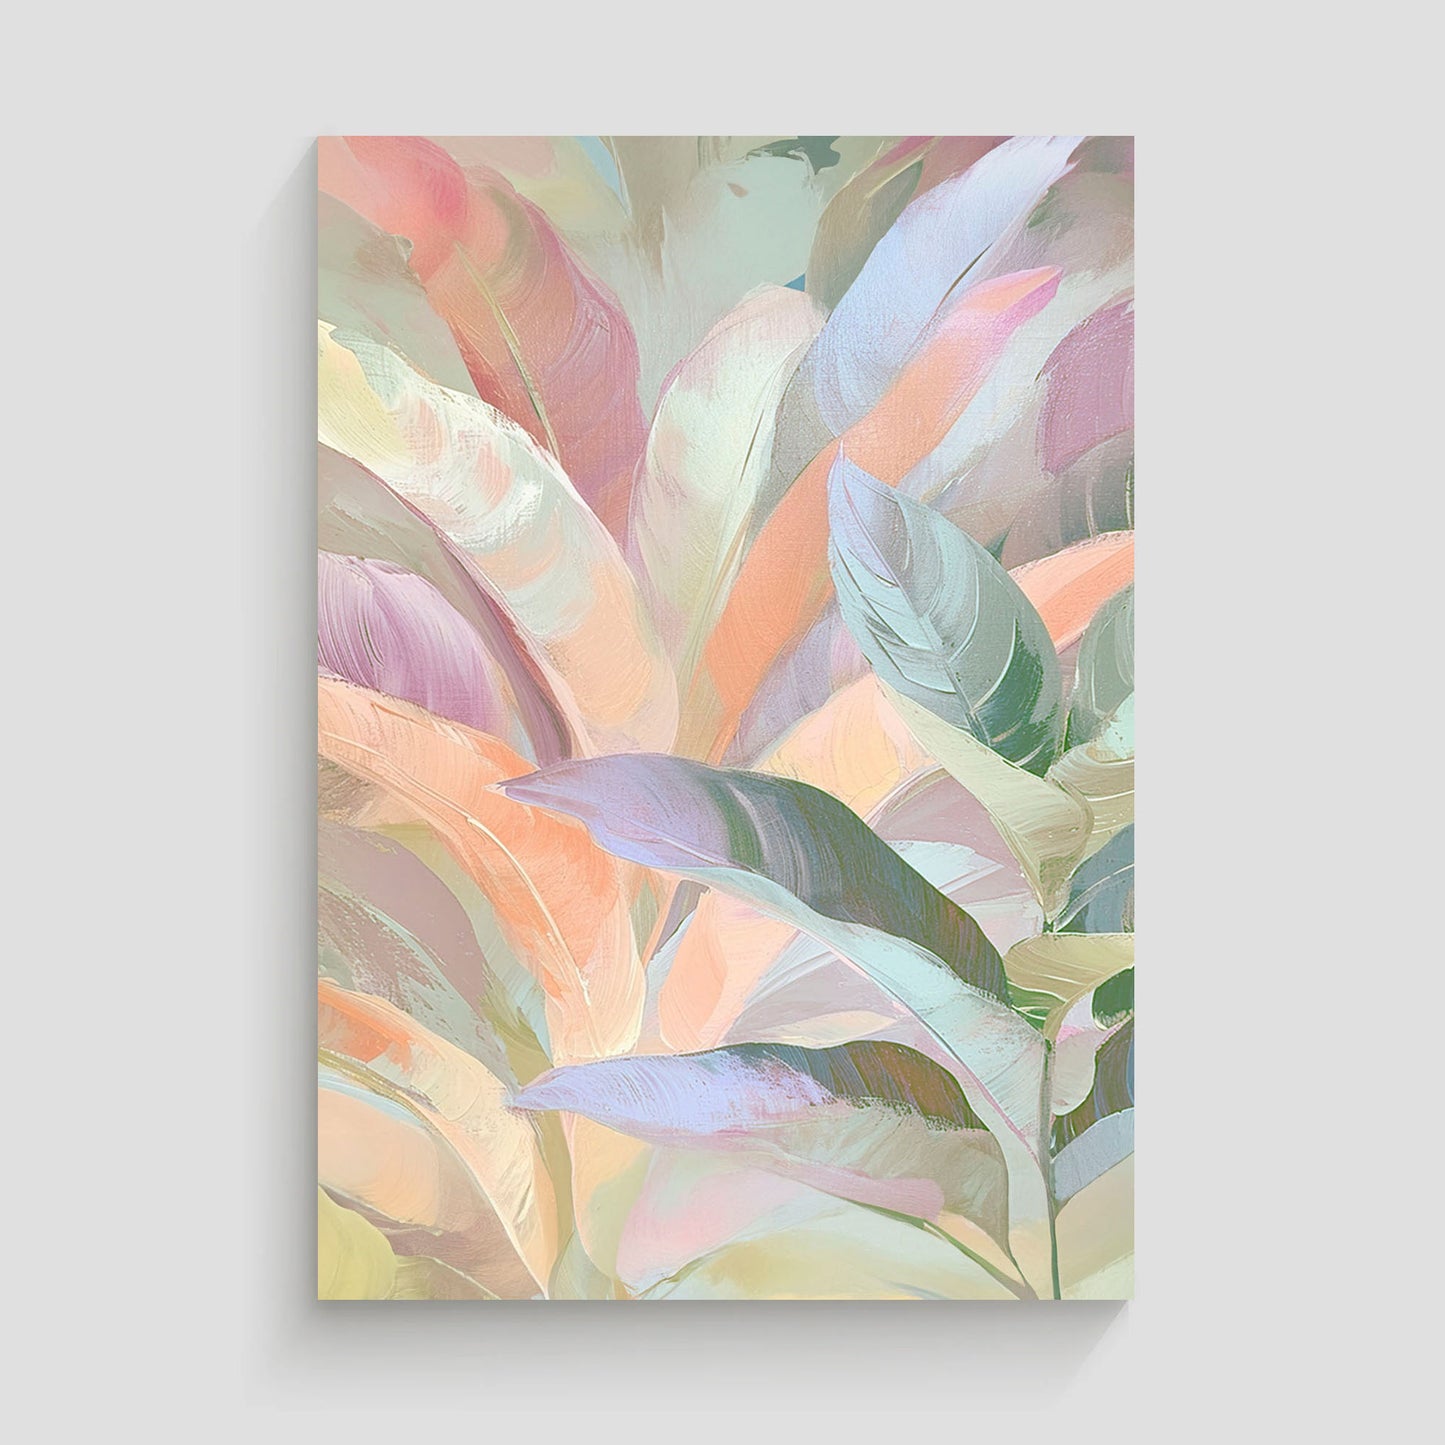 Imagen de arte abstracto mostrando hojas en tonos pastel, con una textura suave y colores sutiles, creando una sensación de calma y serenidad.